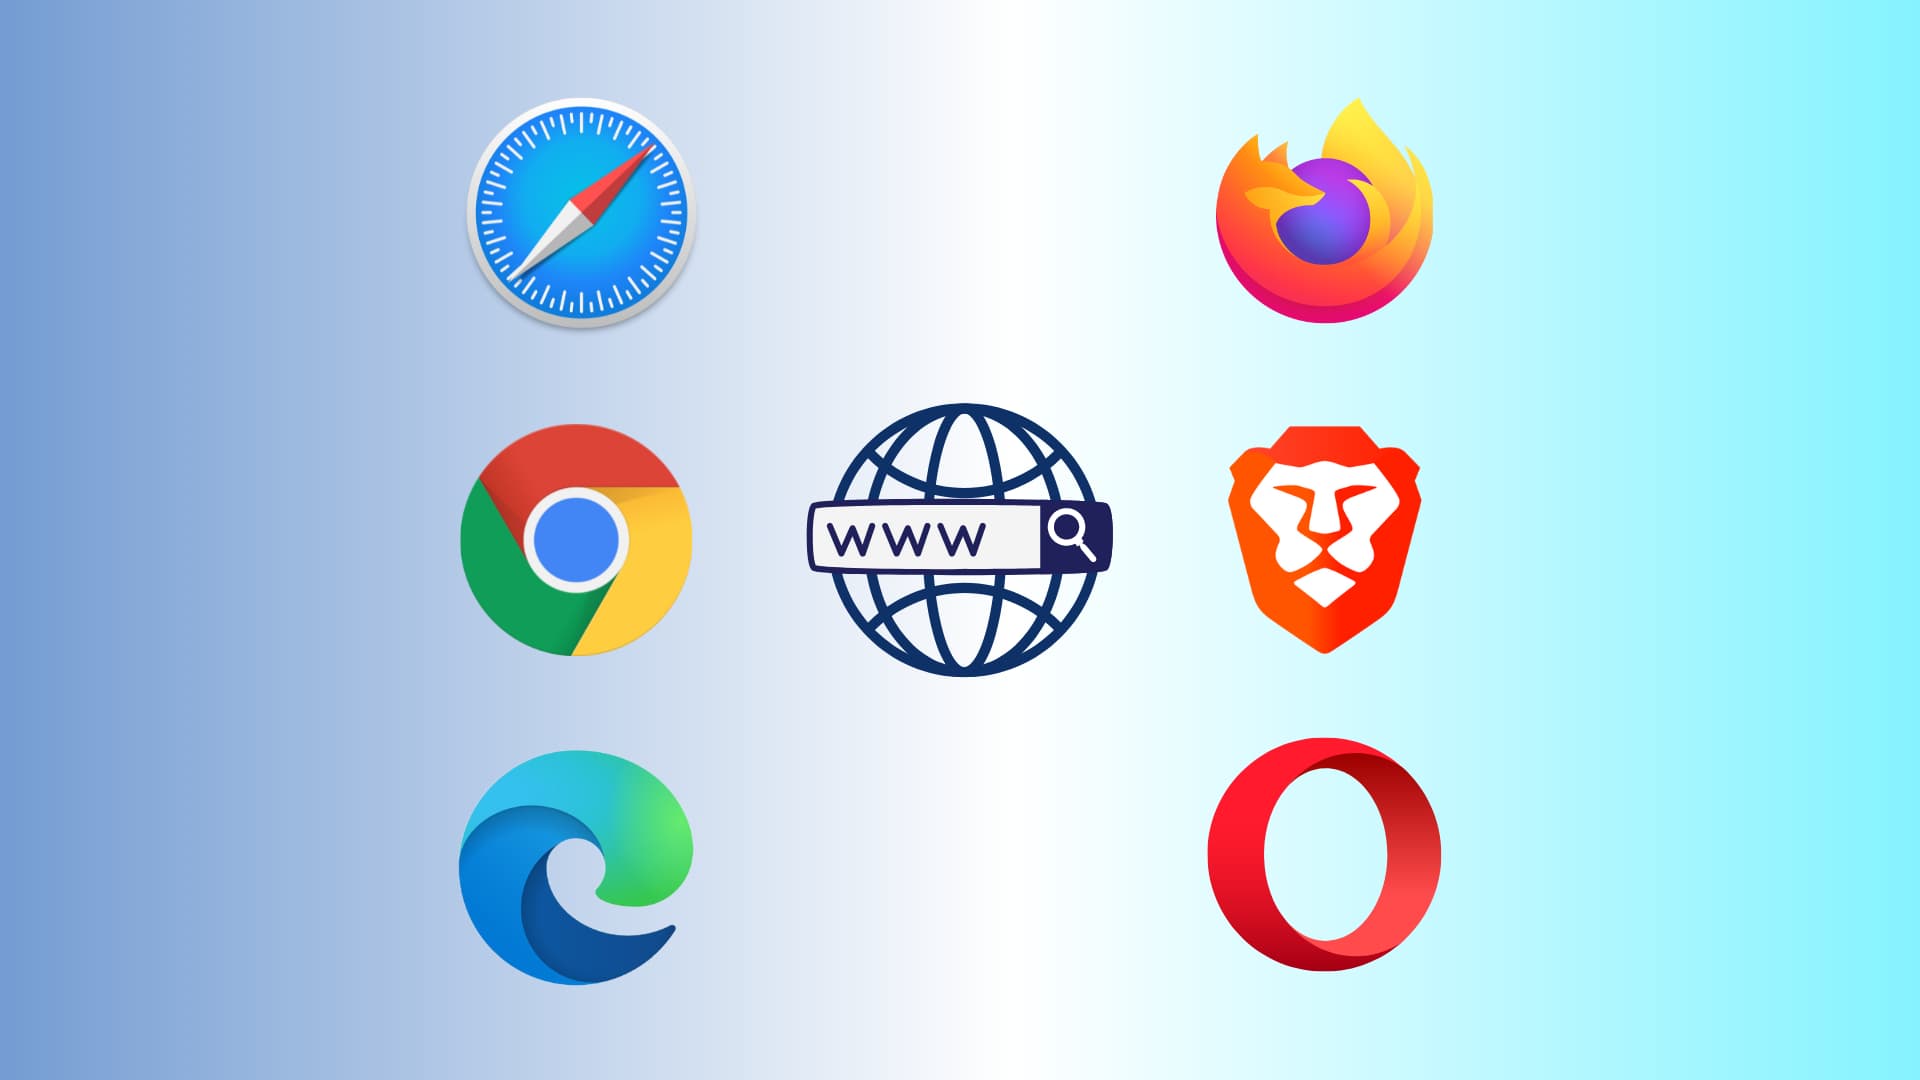 Icônes des navigateurs Safari, Chrome, Edge, Firefox, Brave et Opera sur fond bleu clair